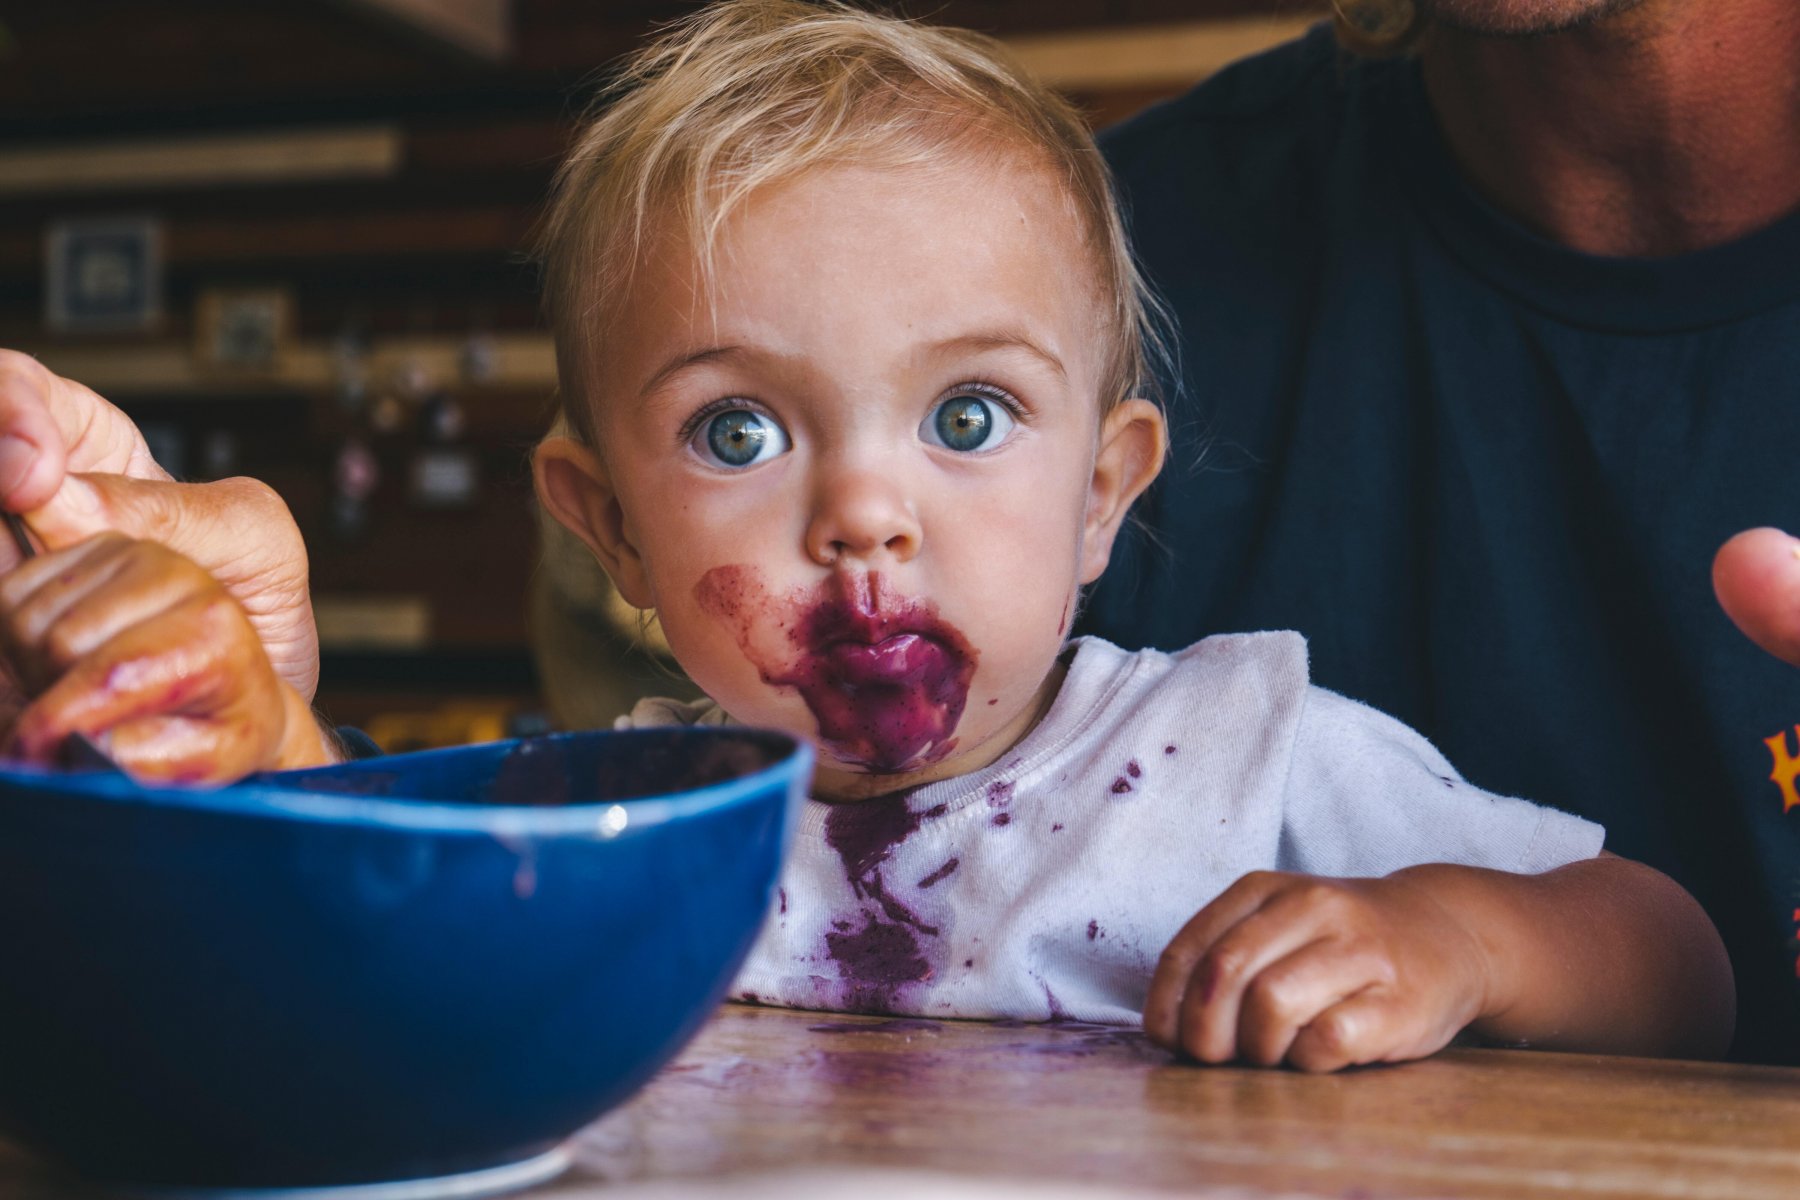 Geheimtipp Muenchen Gastros Mit Kids Header Unsplash – ©Unsplash